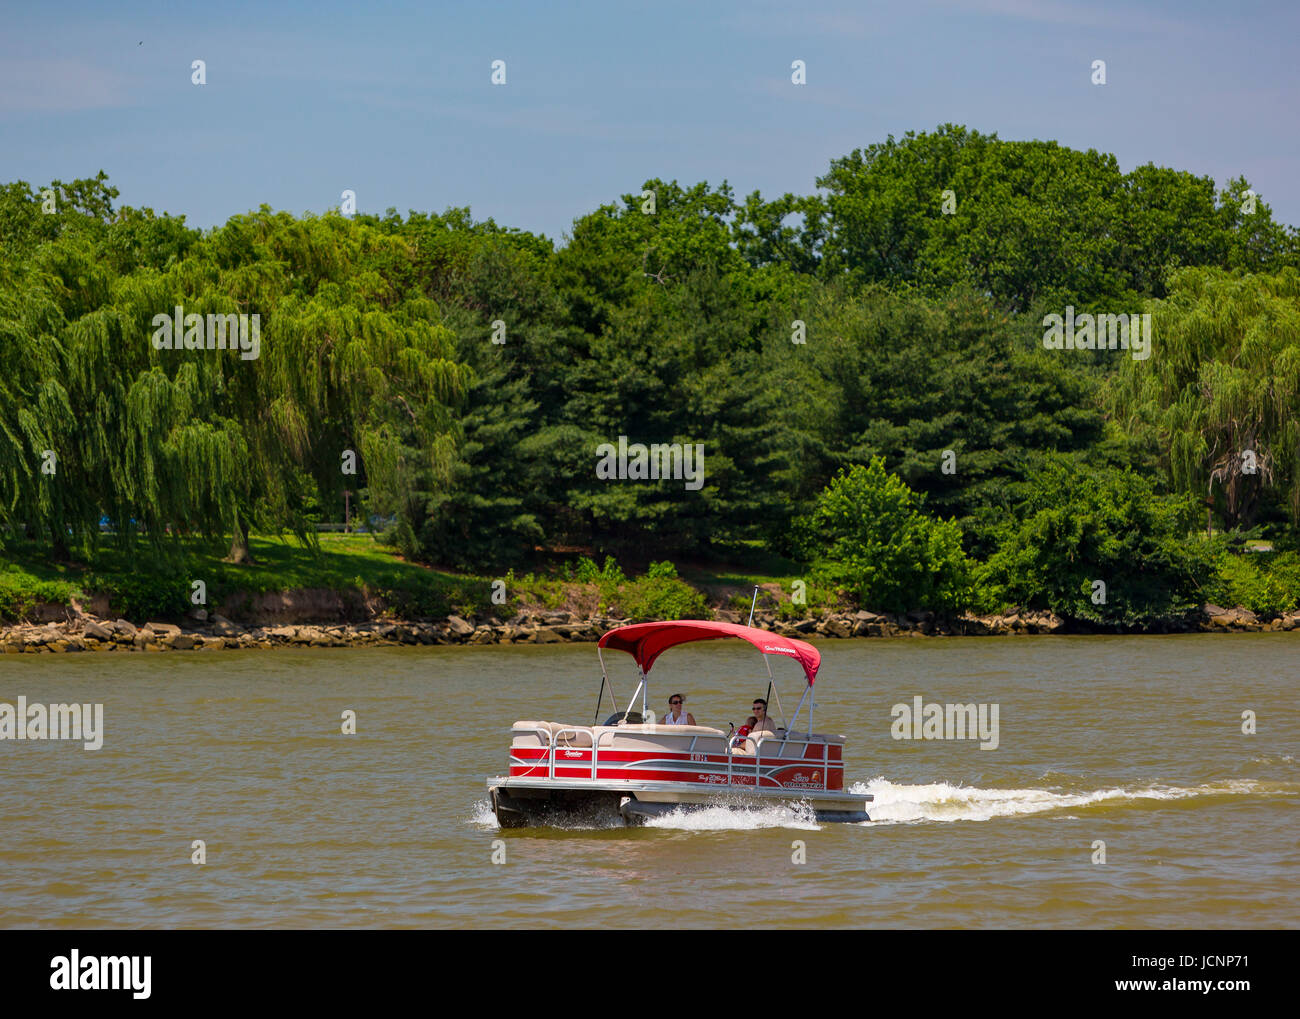 ARLINGTON, VIRGINIA, EE.UU. - Pontoon Boat sobre el río Potomac. Foto de stock